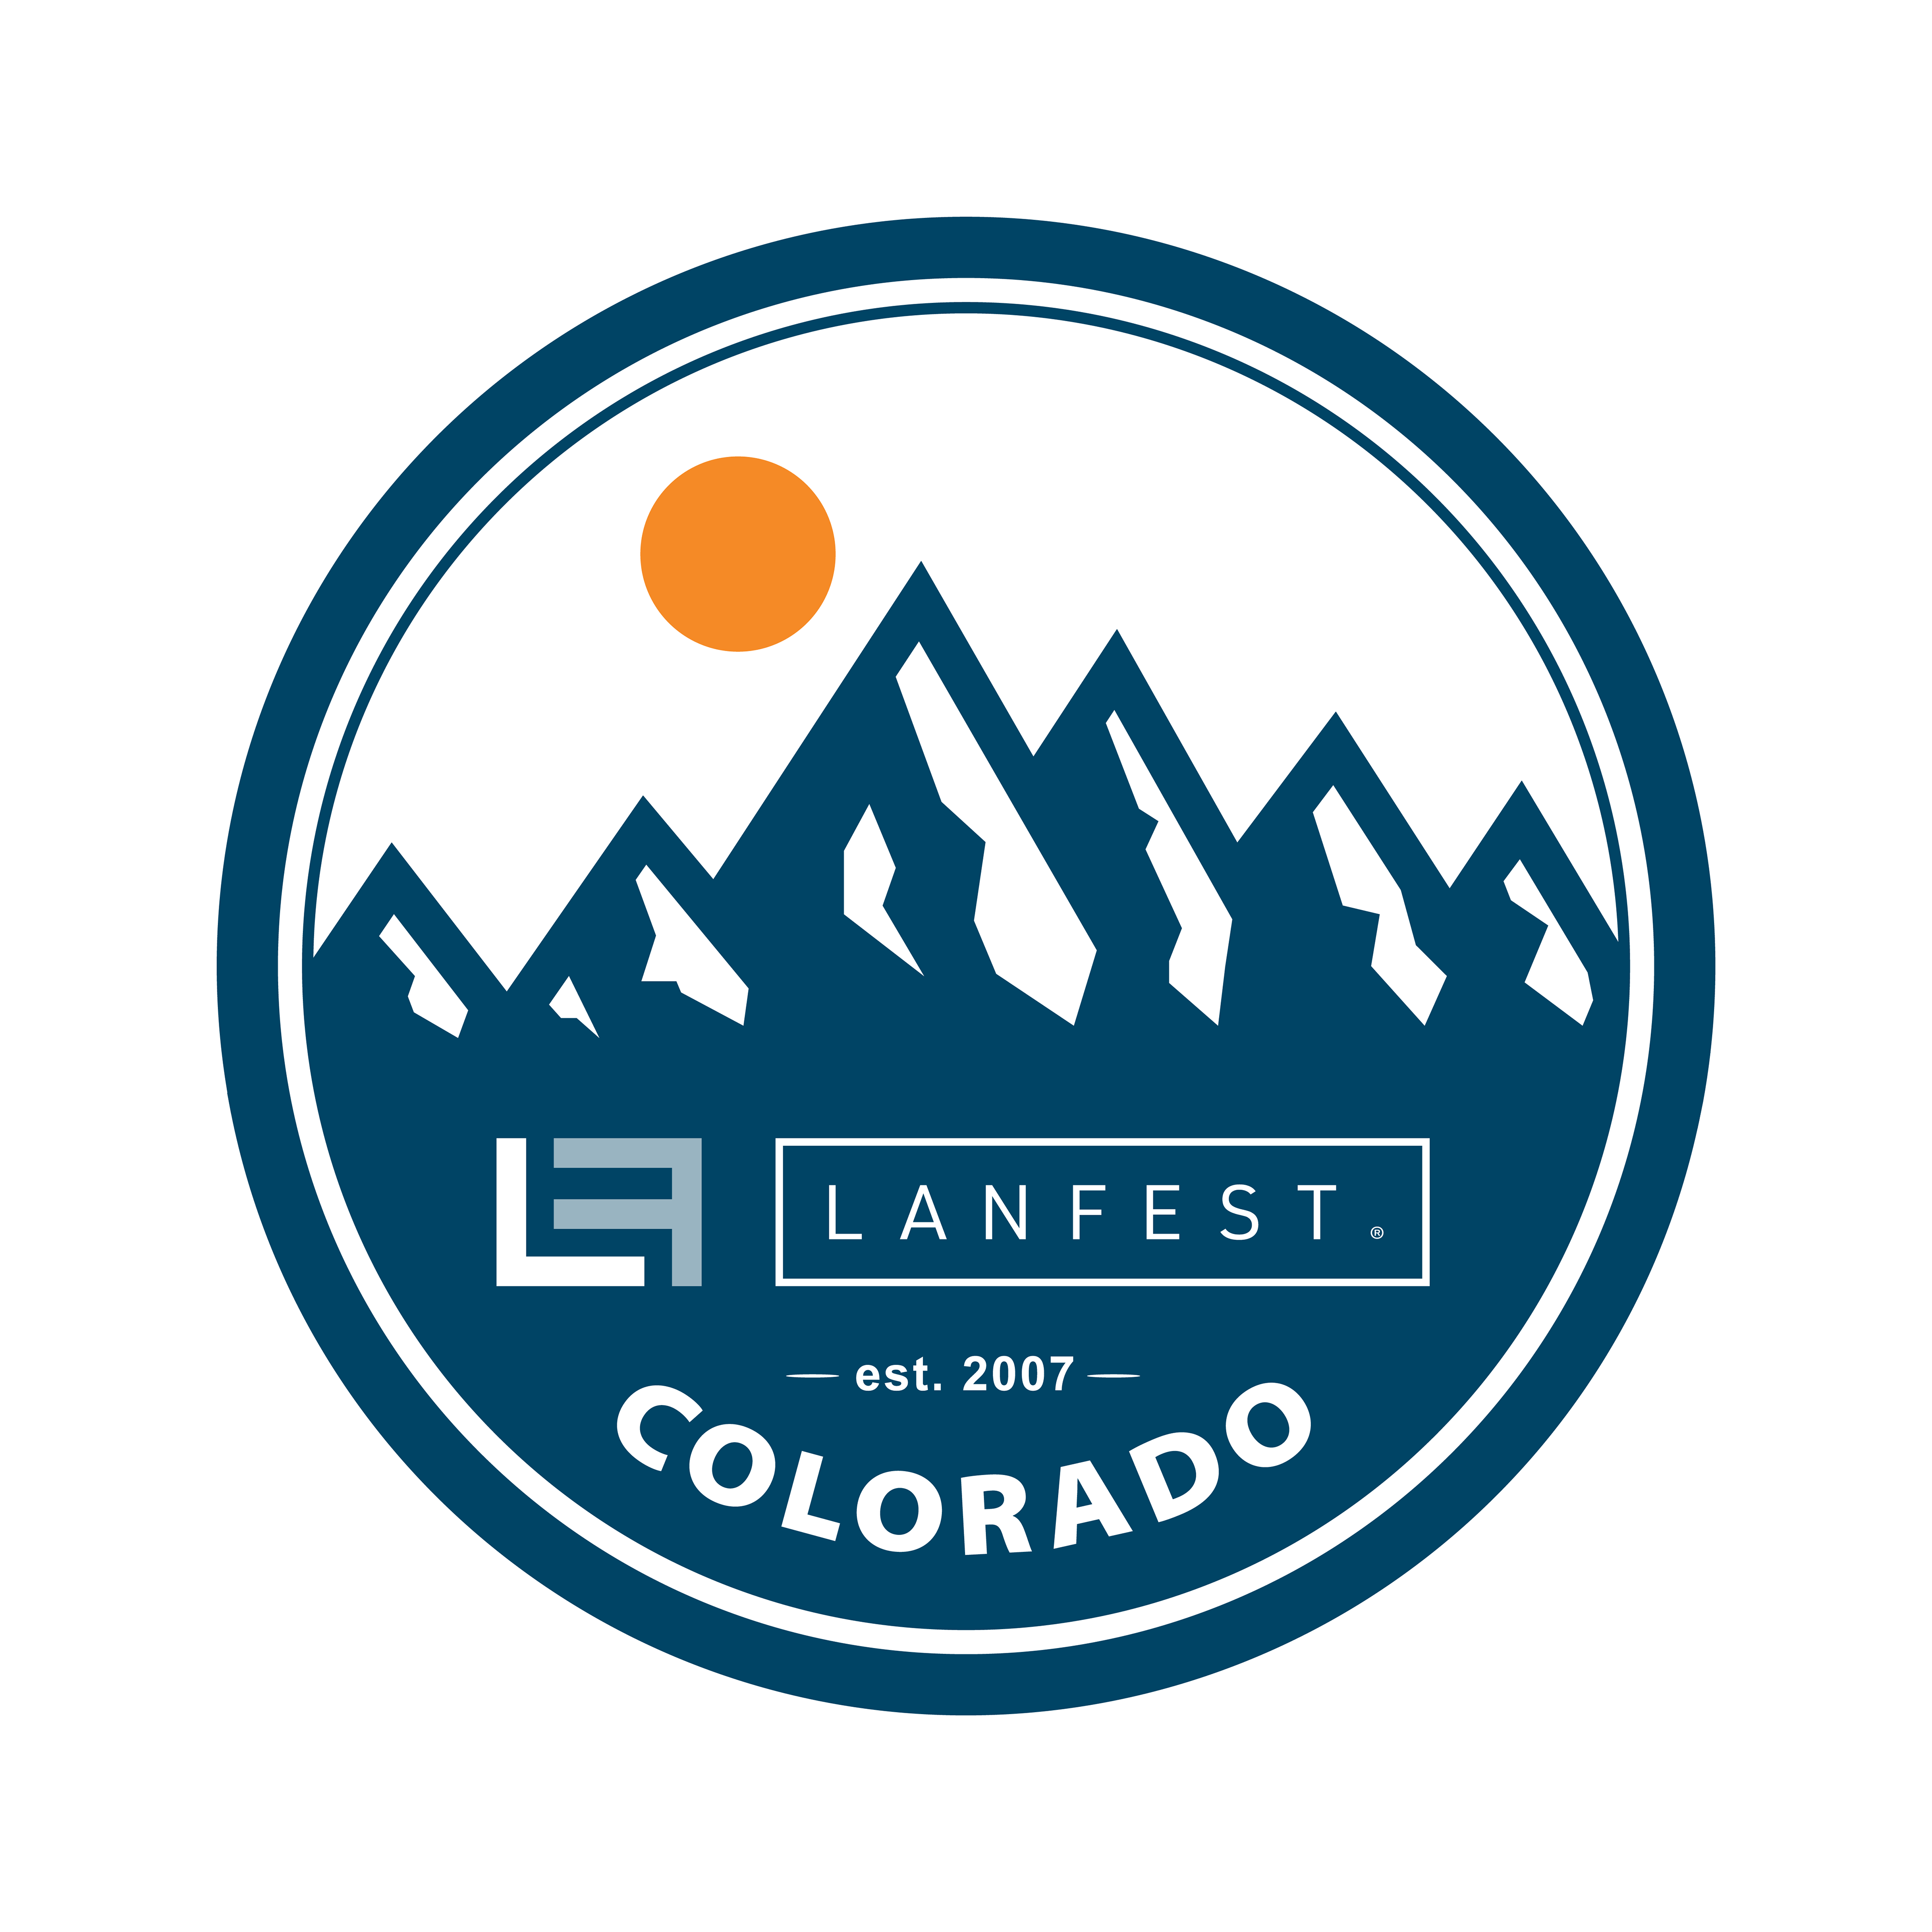 LANFest Colorado – Castle Rock, CO